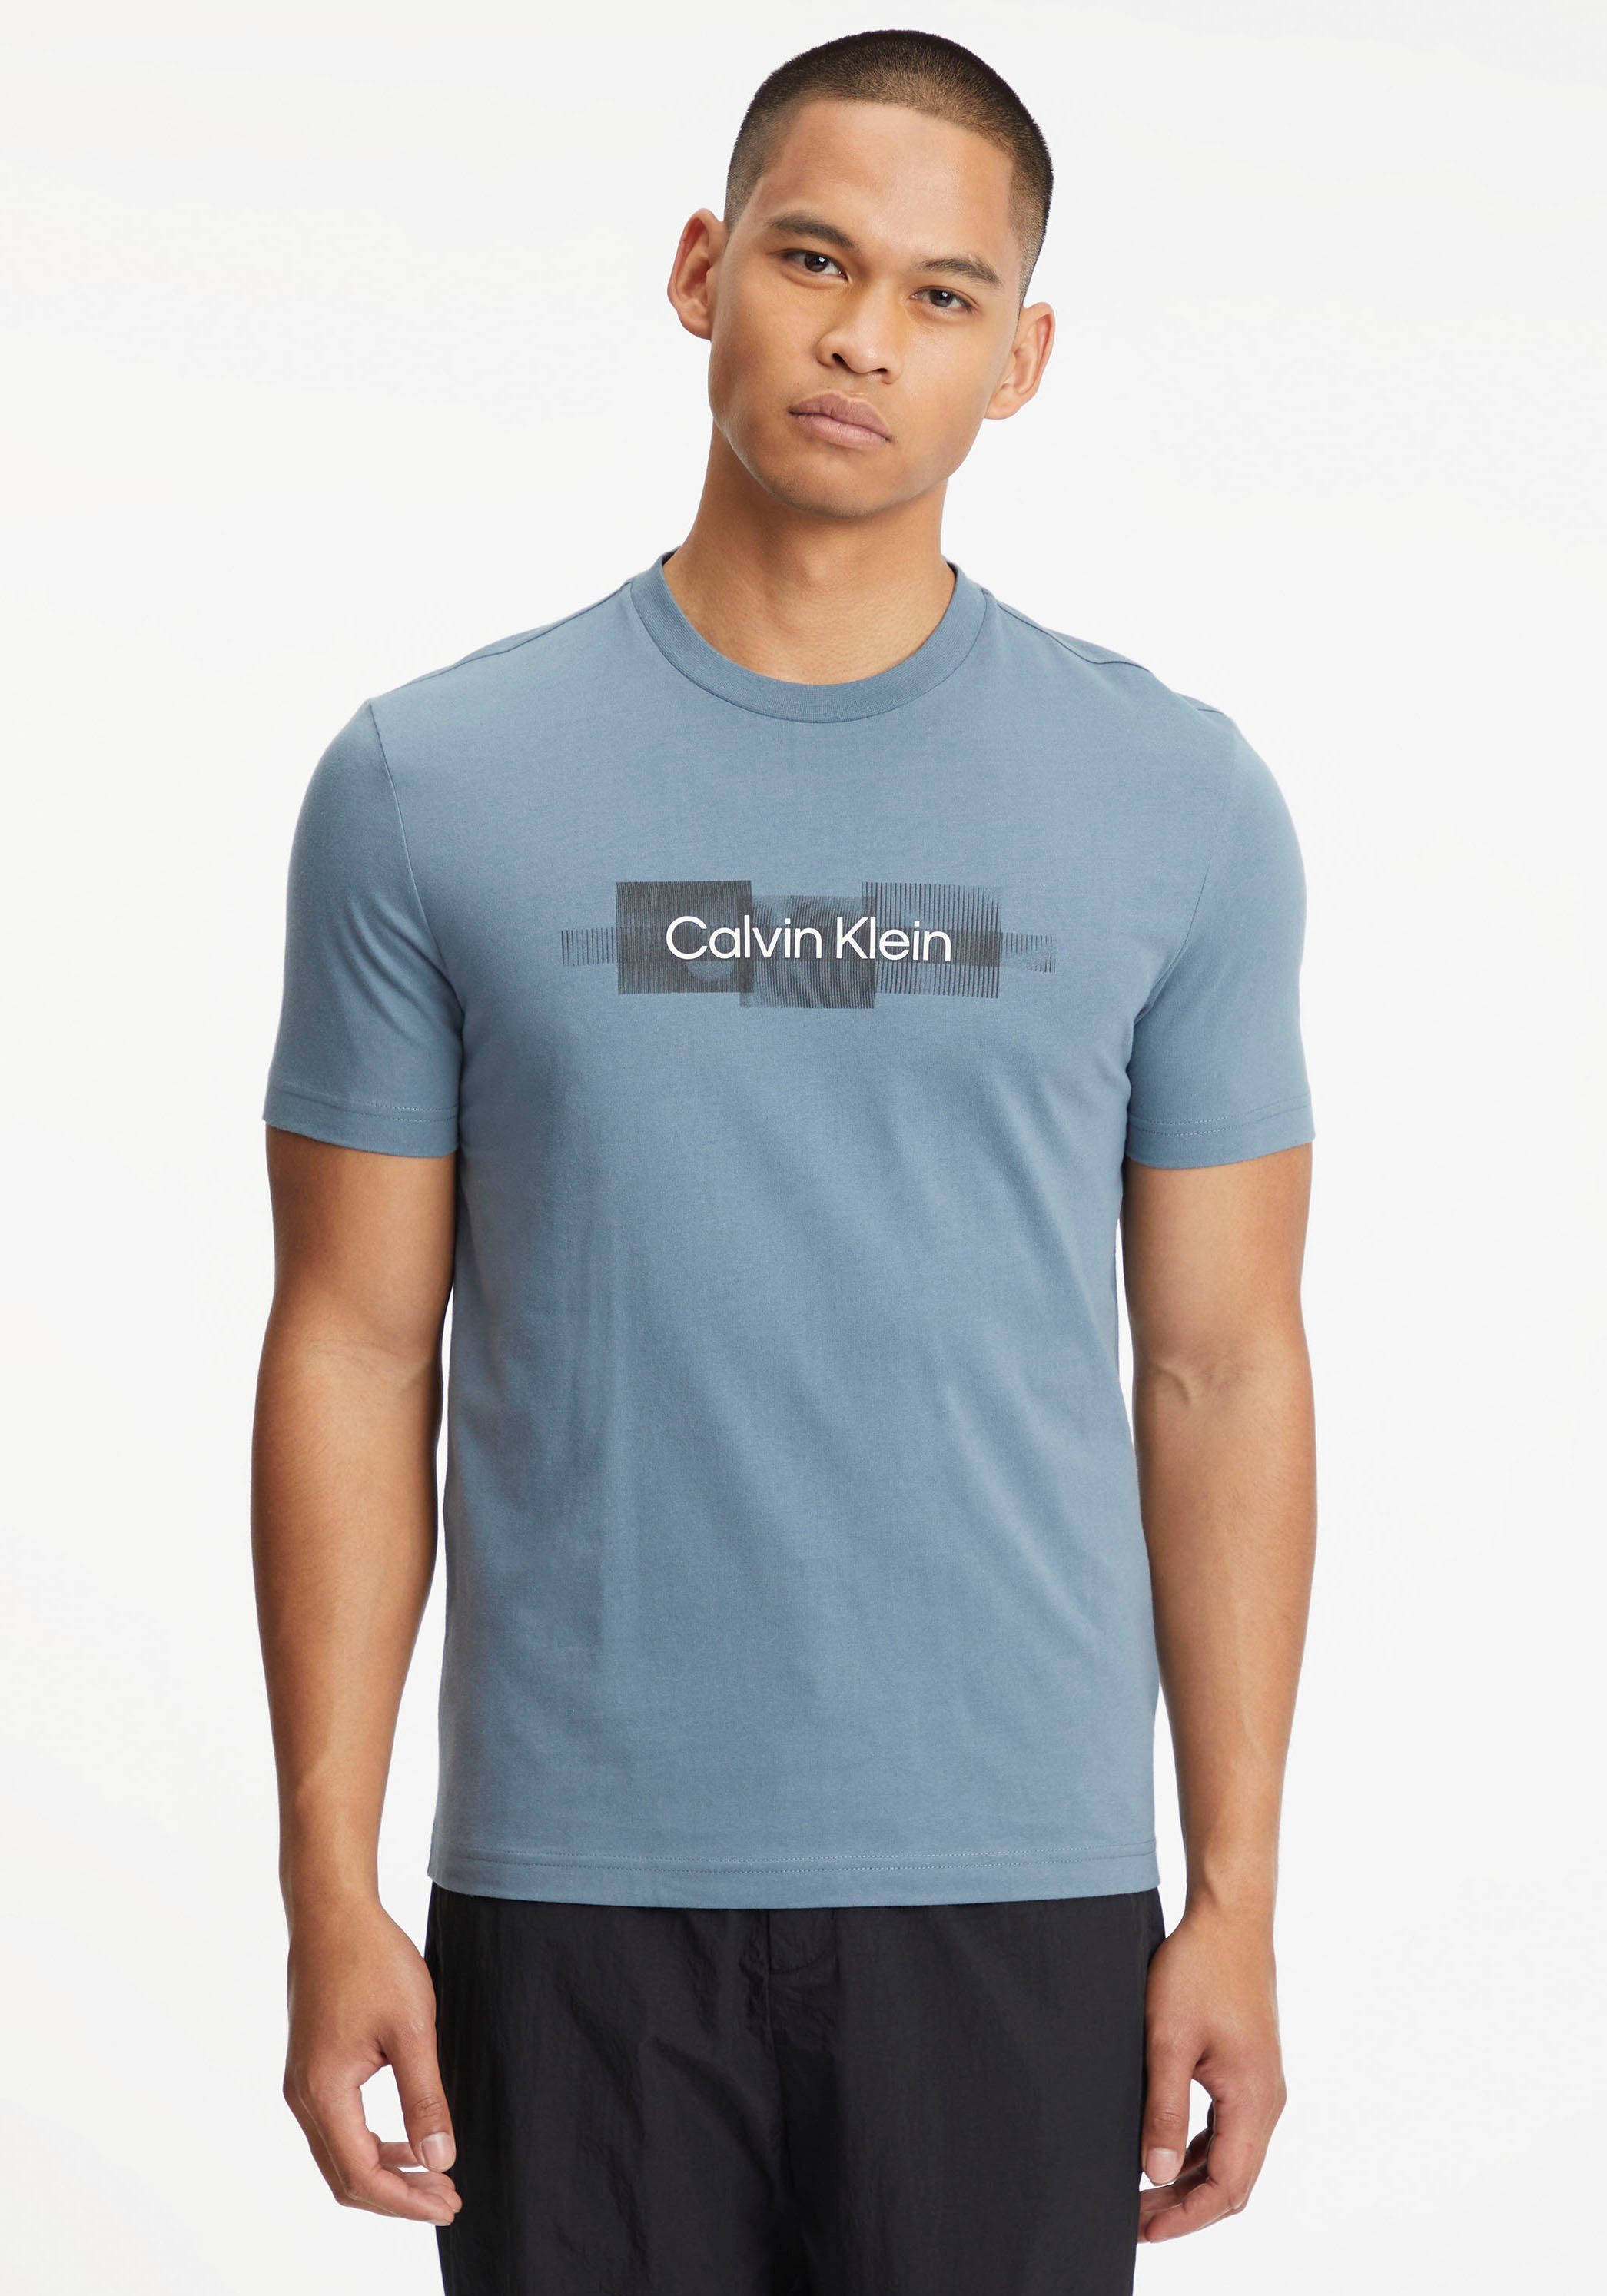 reiner BOX Tar aus LOGO STRIPED Klein T-Shirt T-SHIRT Grey Baumwolle Calvin